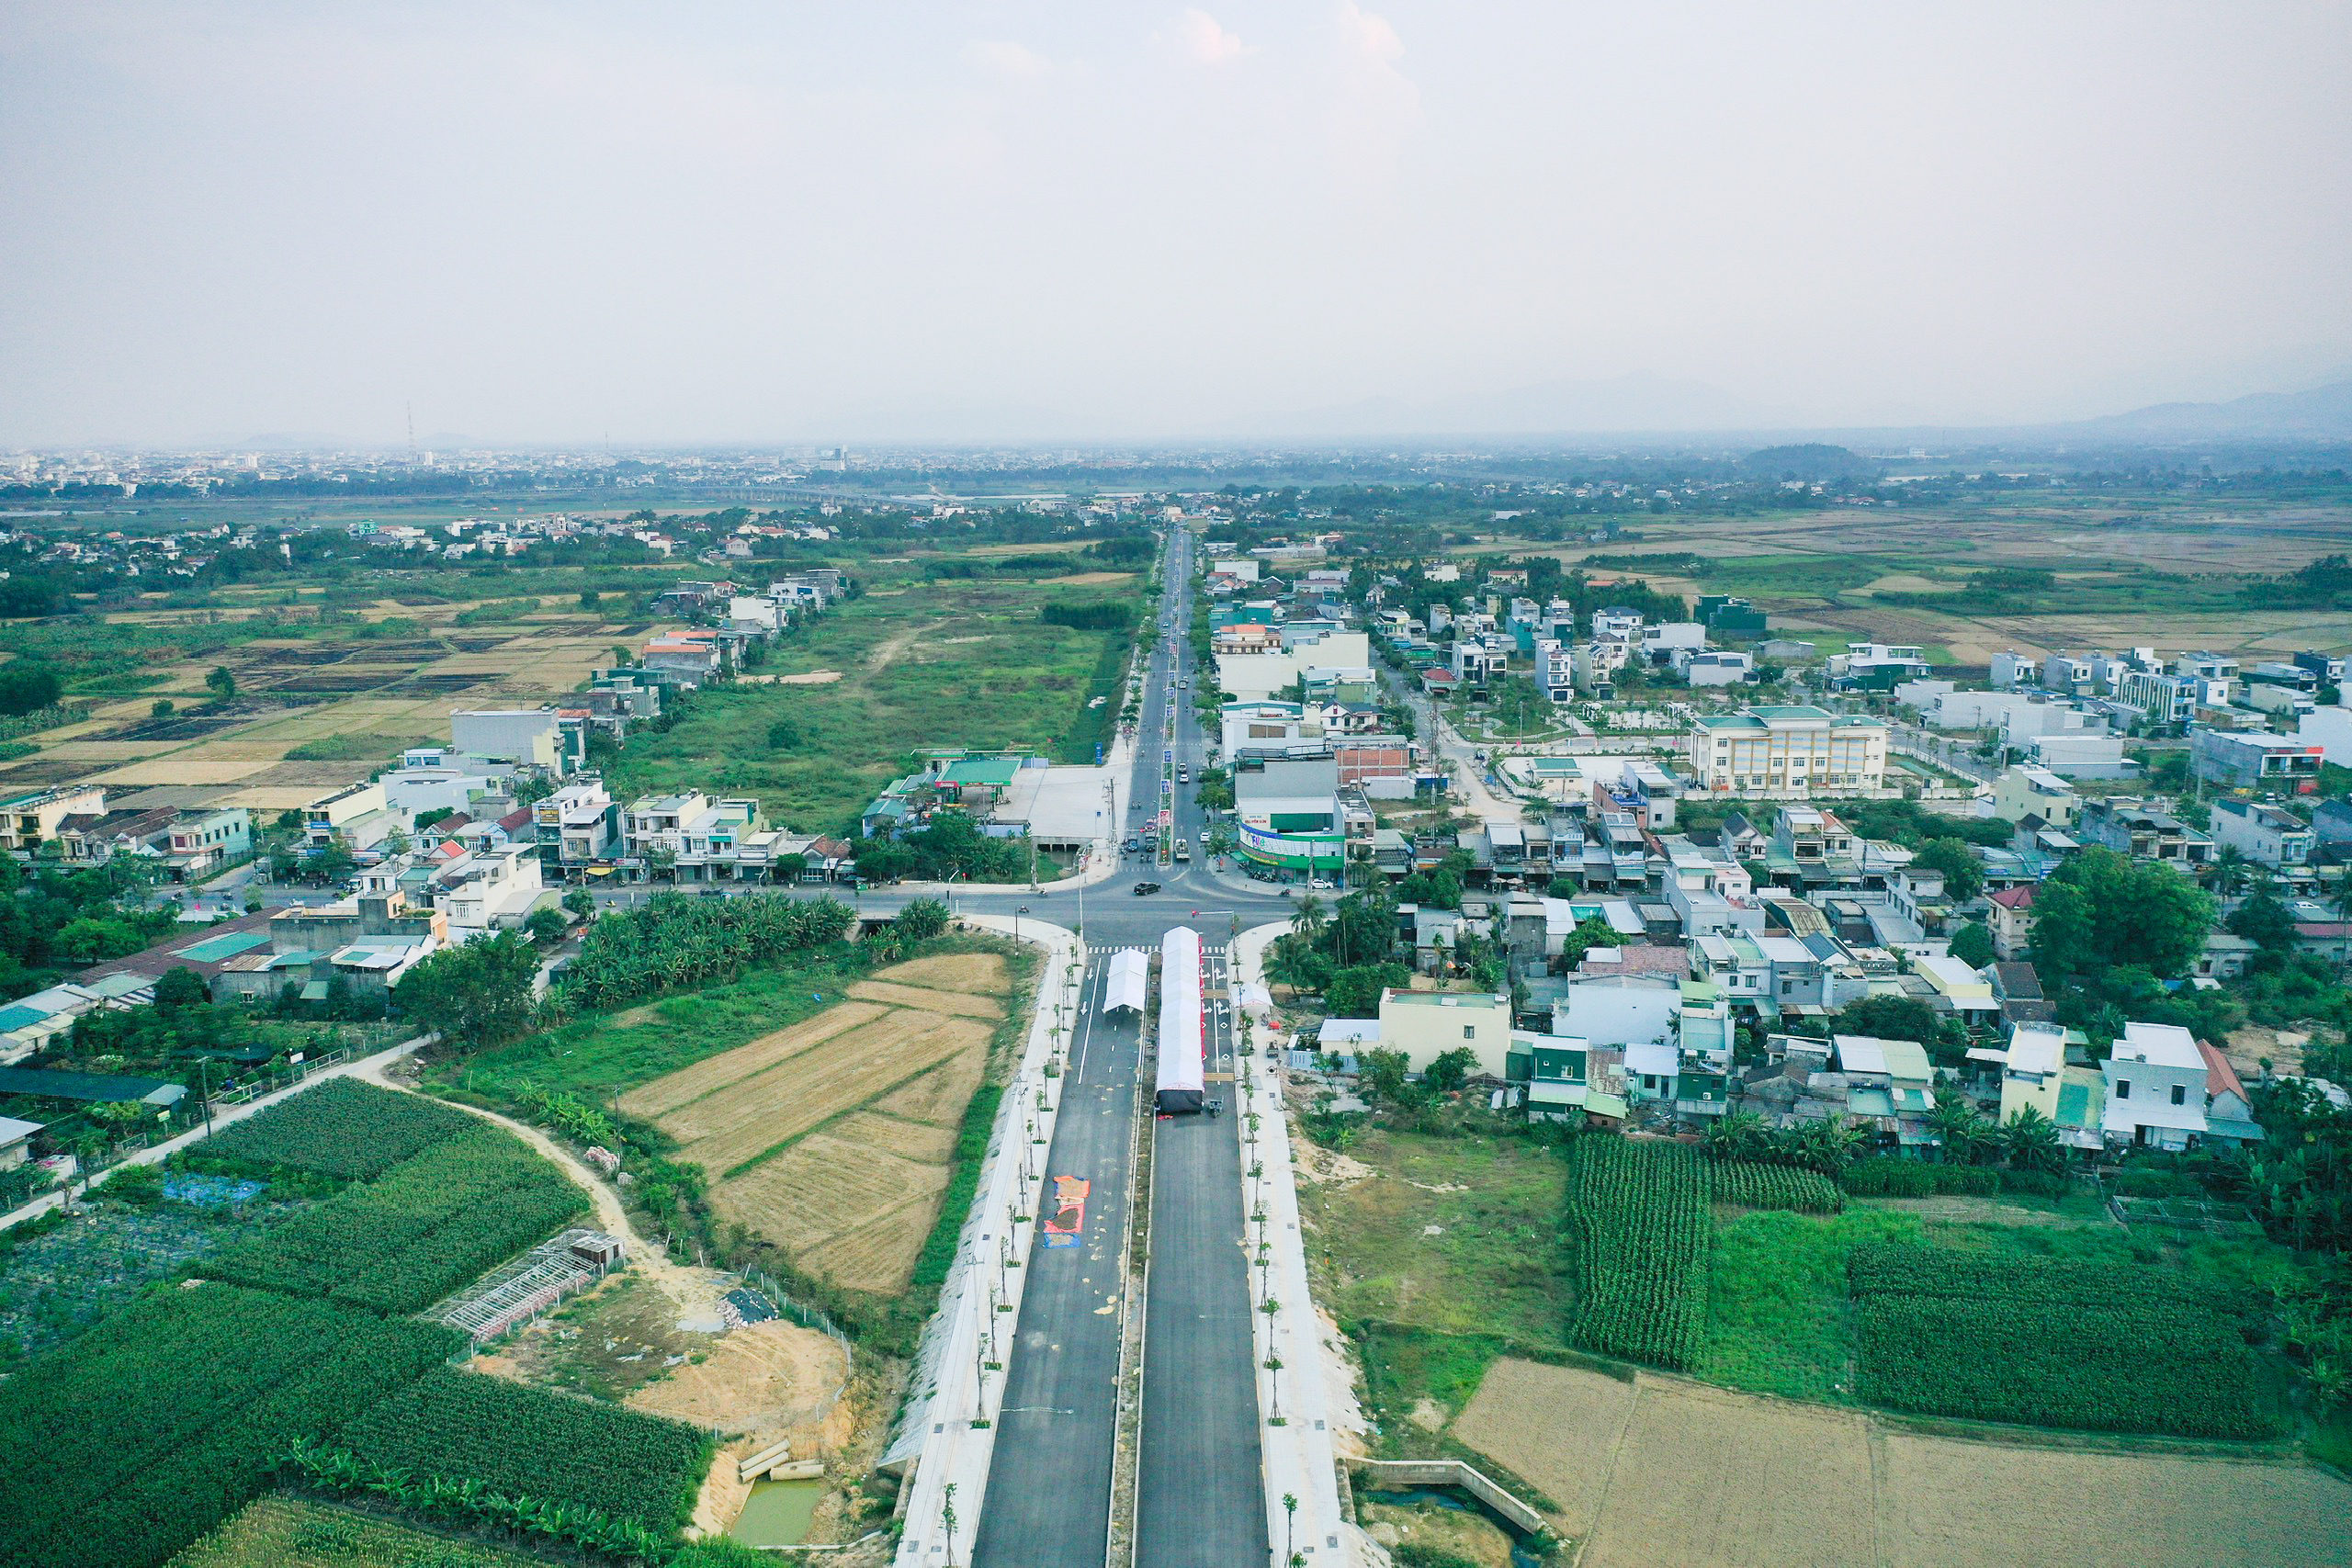 Việc đầu tư dự án trên nhằm từng bước hoàn thiện mạng lưới giao thông, giảm ùn tắc và đảm bảo an toàn giao thông trên tuyến QL1 và đường Nguyễn Văn Linh, đoạn từ Khu Công nghiệp - đô thị và dịch vụ VSIP (xã Tịnh Phong, H.Sơn Tịnh) đến cầu Trà Khúc 1 (TP.Quảng Ngãi), góp phần mở rộng không gian đô thị Quảng Ngãi, thúc đẩy phát triển kinh tế - xã hội của địa phương